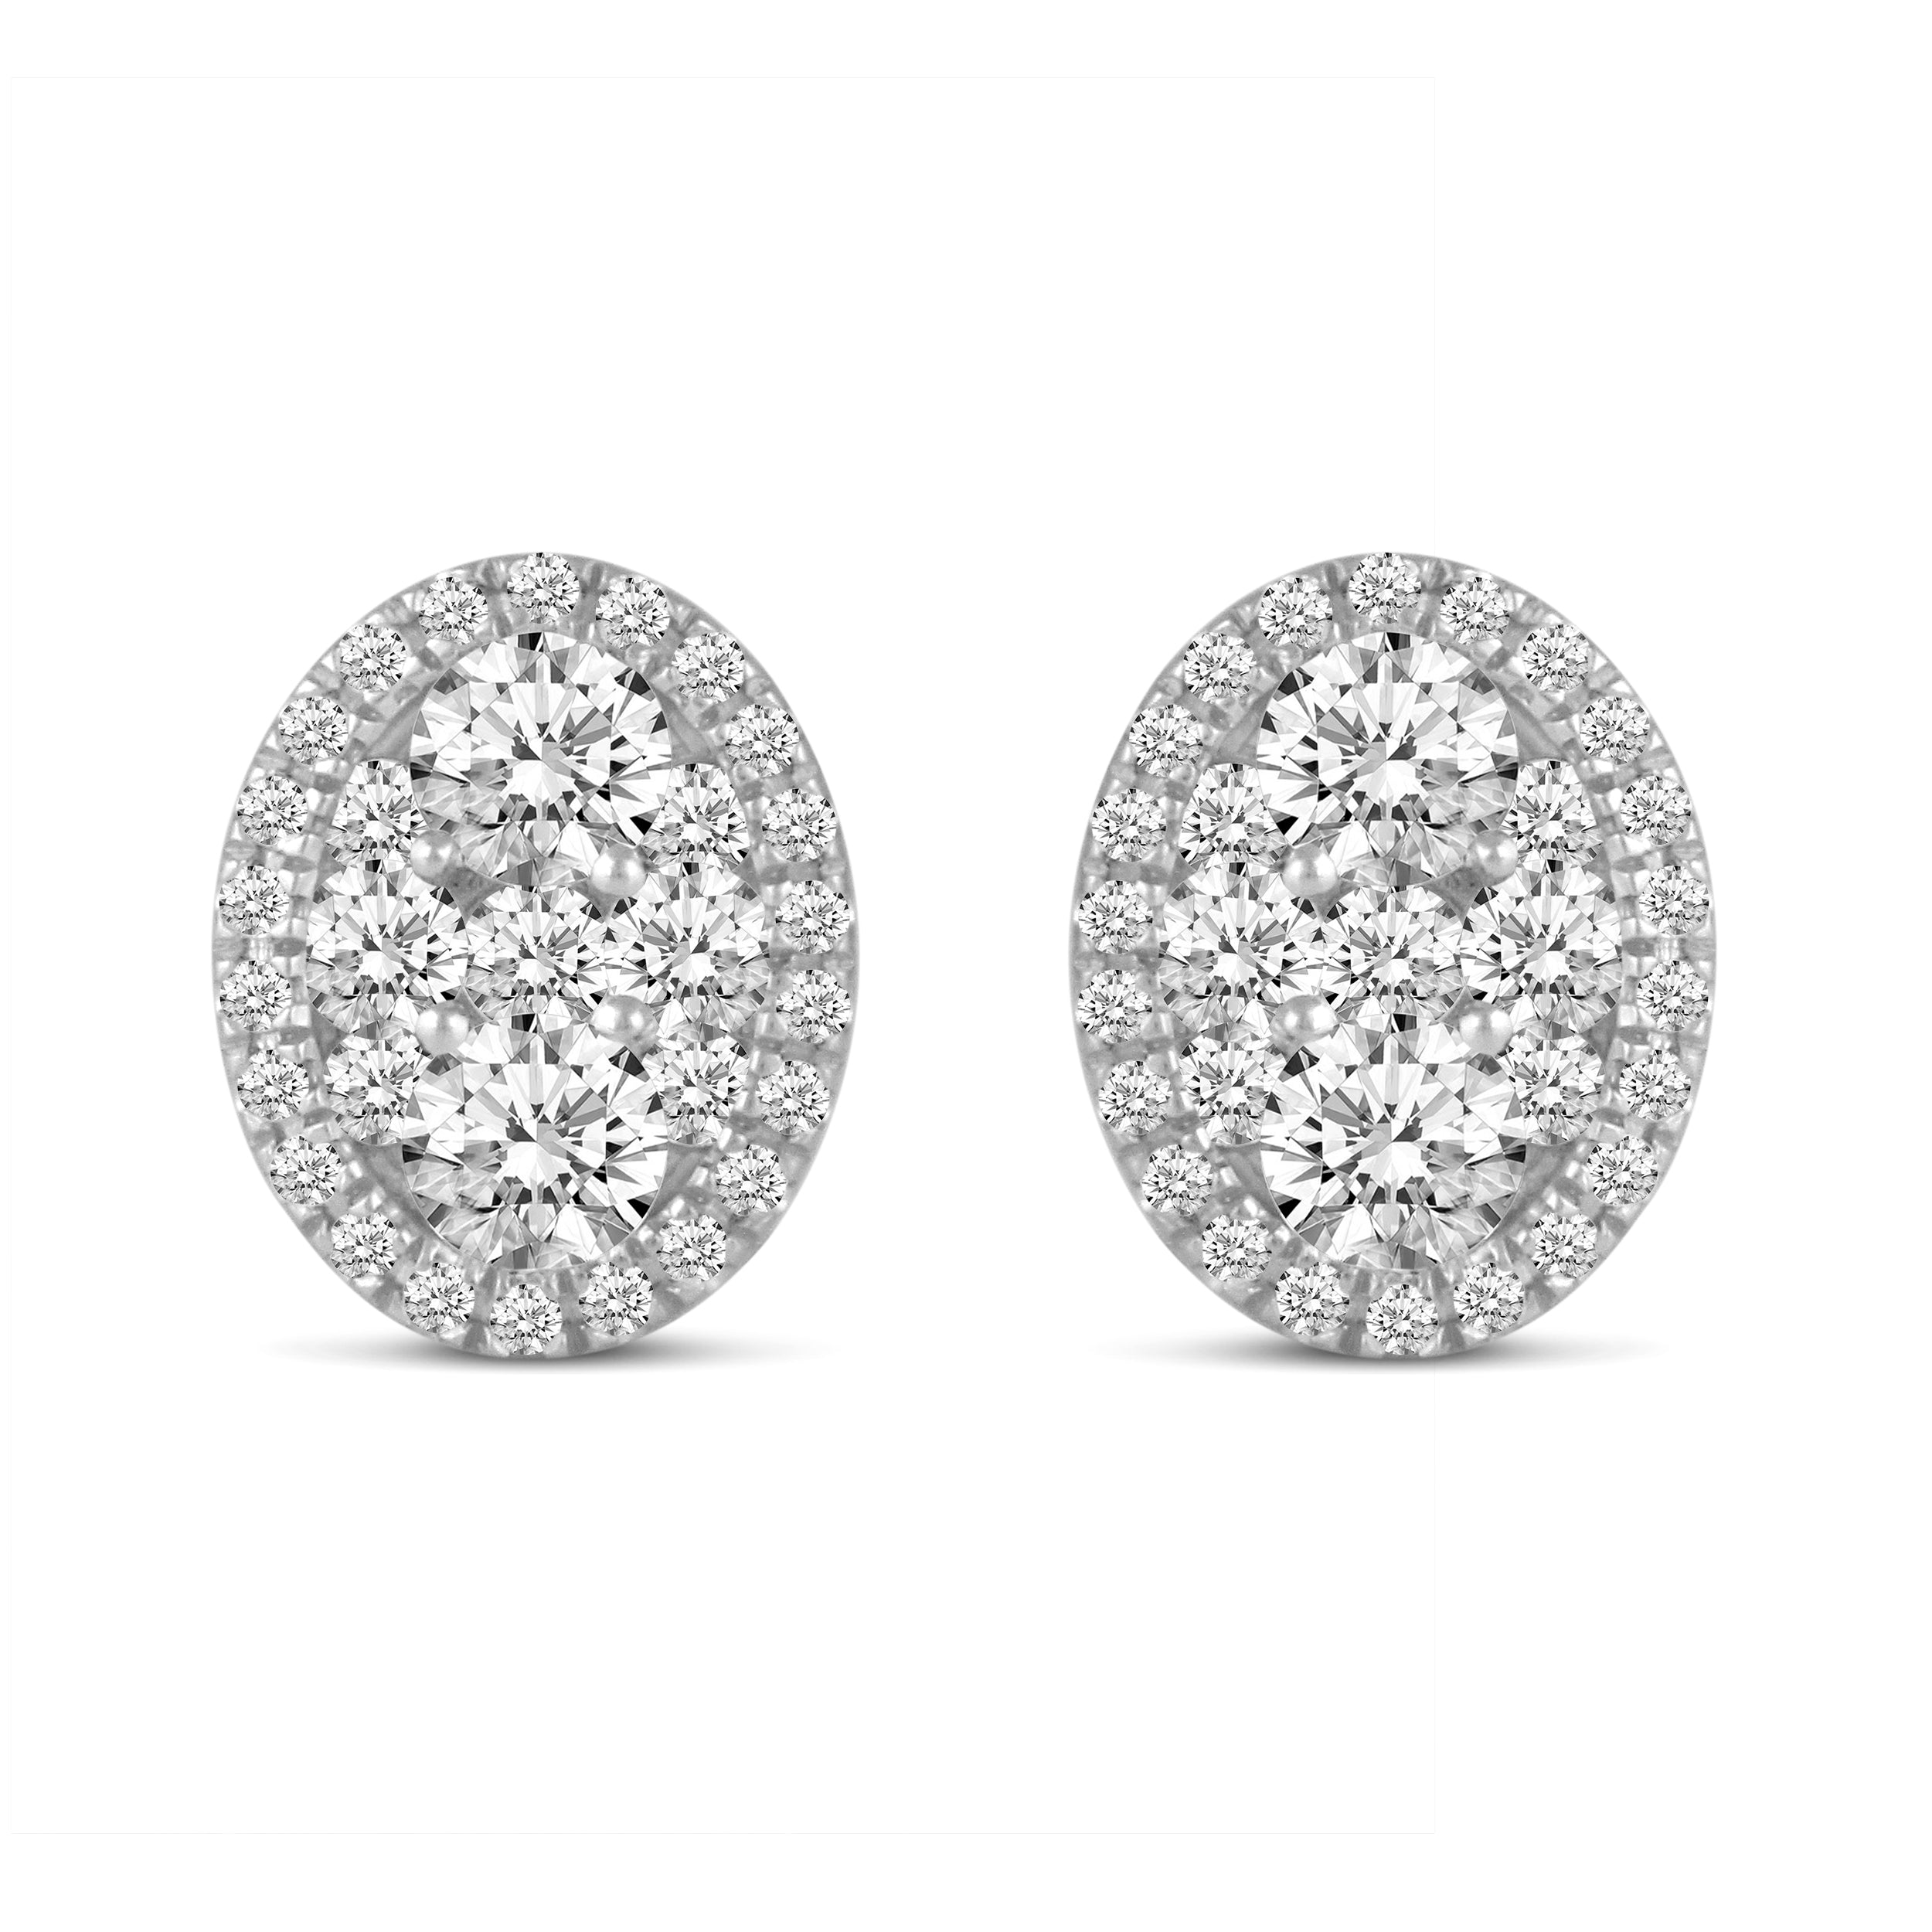 Lovely Oval Sapphire Diamond Halo Earrings 14K White Gold